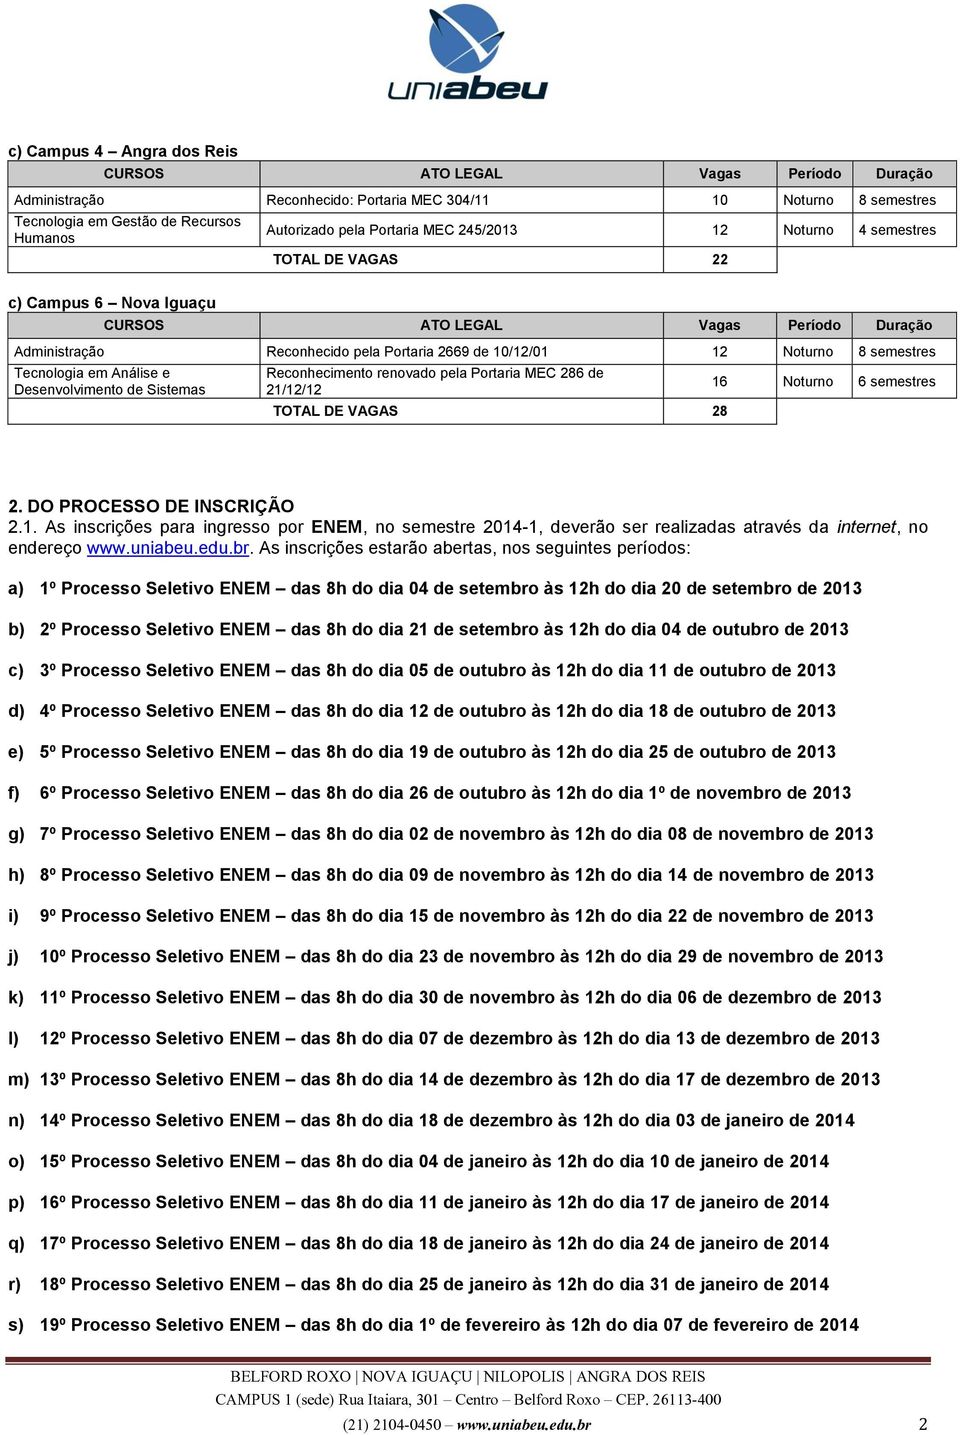 DO PROCESSO DE INSCRIÇÃO 2.1. As inscrições para ingresso por ENEM, no semestre 2014-1, deverão ser realizadas através da internet, no endereço www.uniabeu.edu.br.